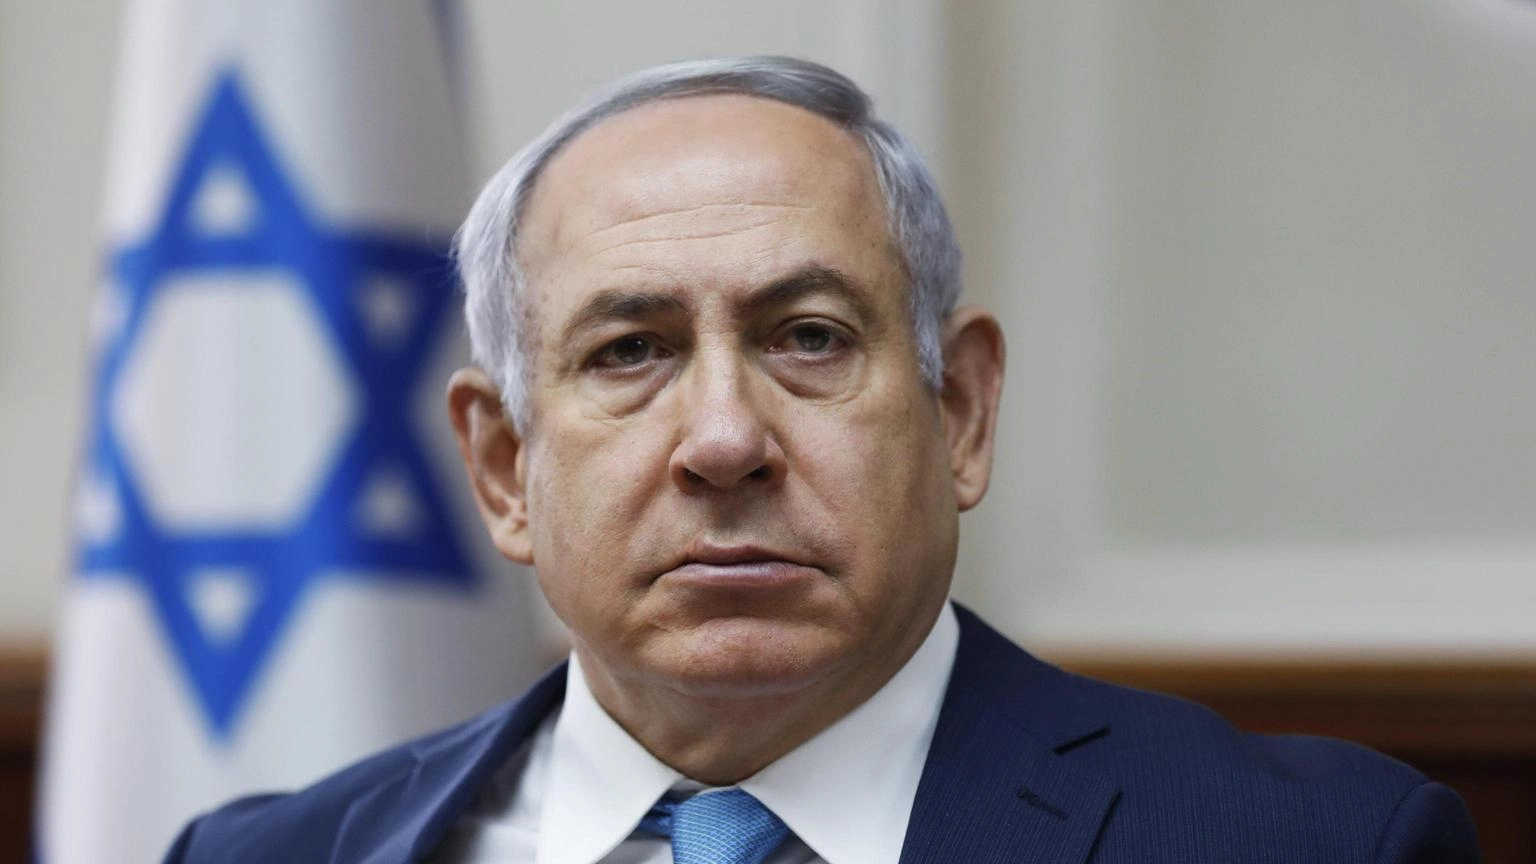 Netanyahu rientrato in Israele, subito al ministero della difesa